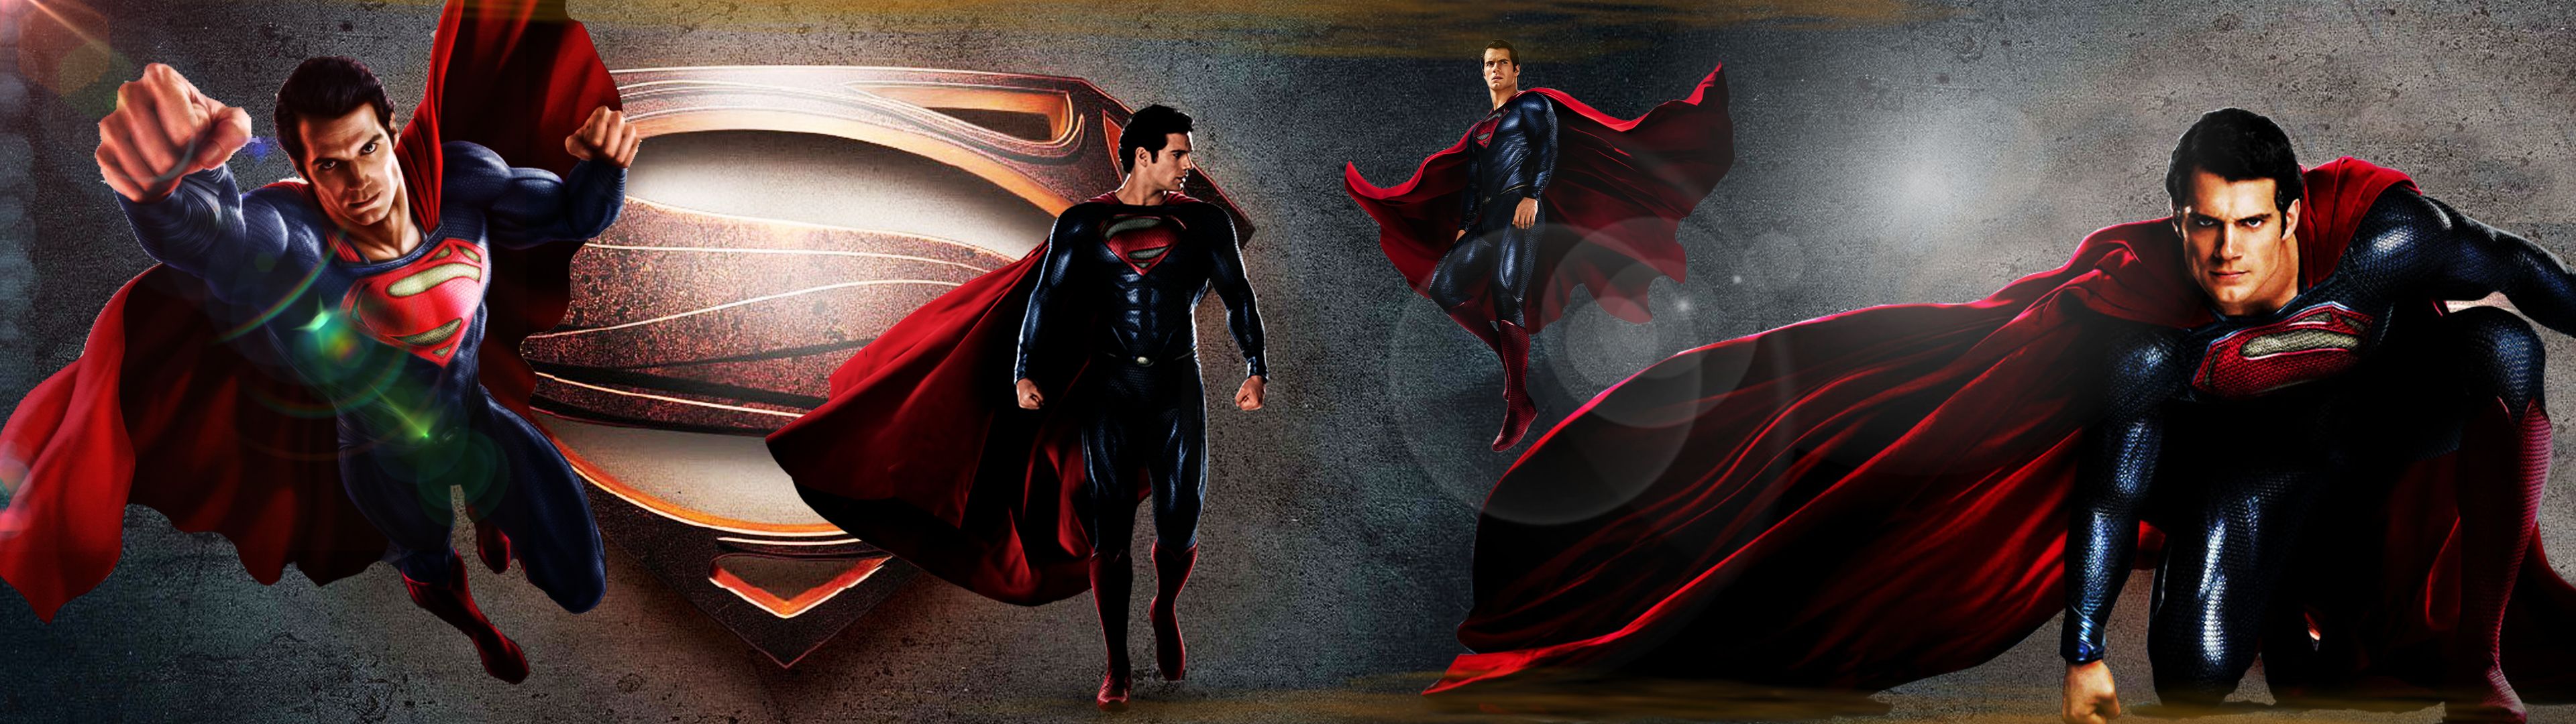 HD wallpaper: Superman, Man Of Steel, Henry Cavill